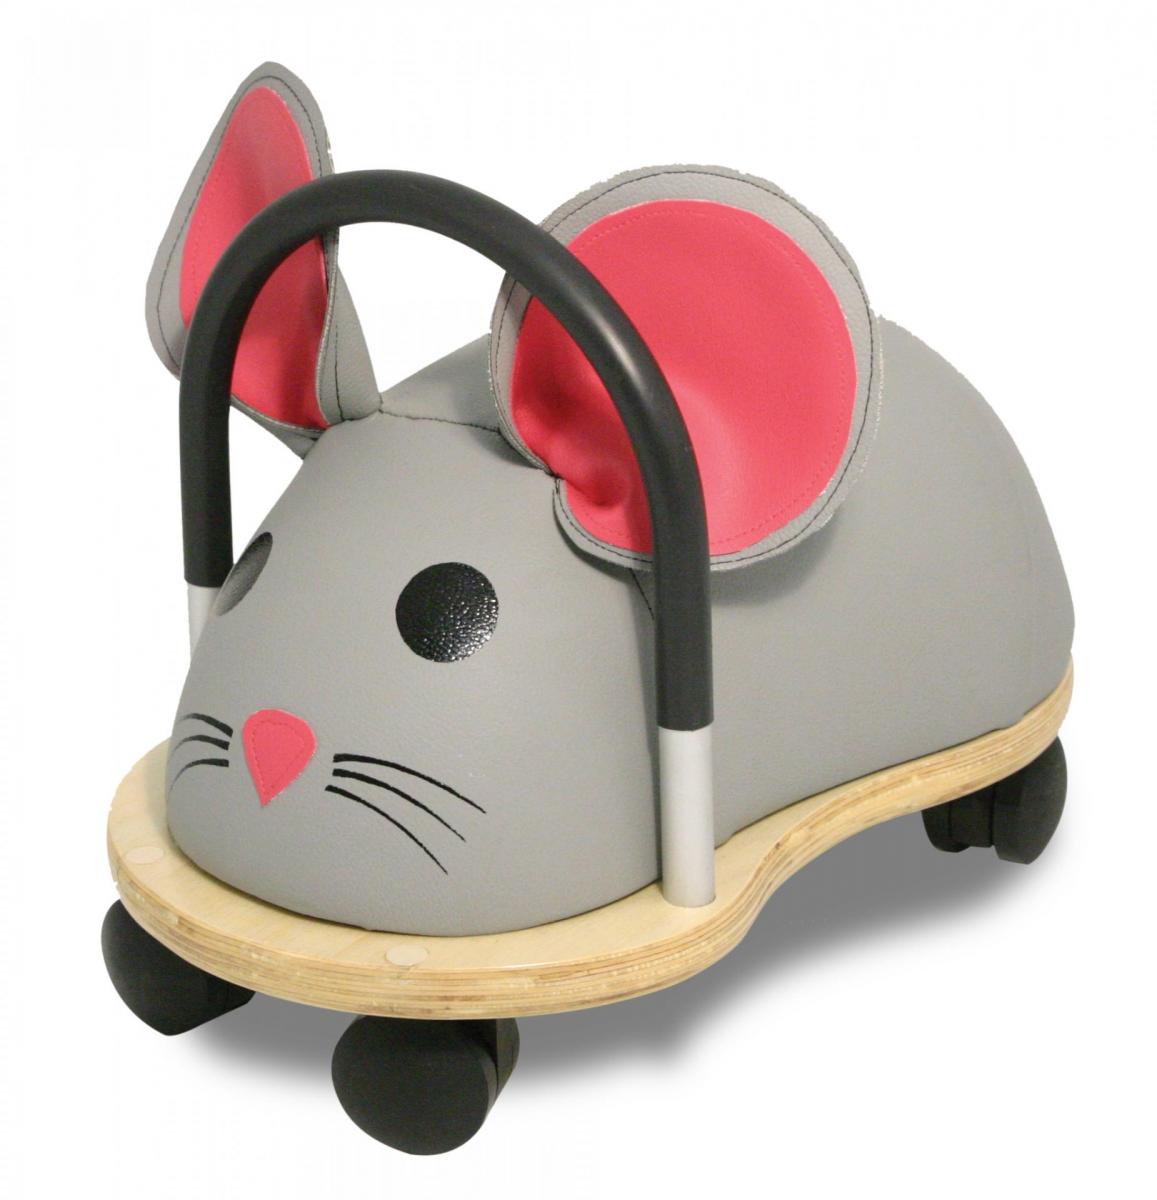 Wheelybug Mouse Ride-on